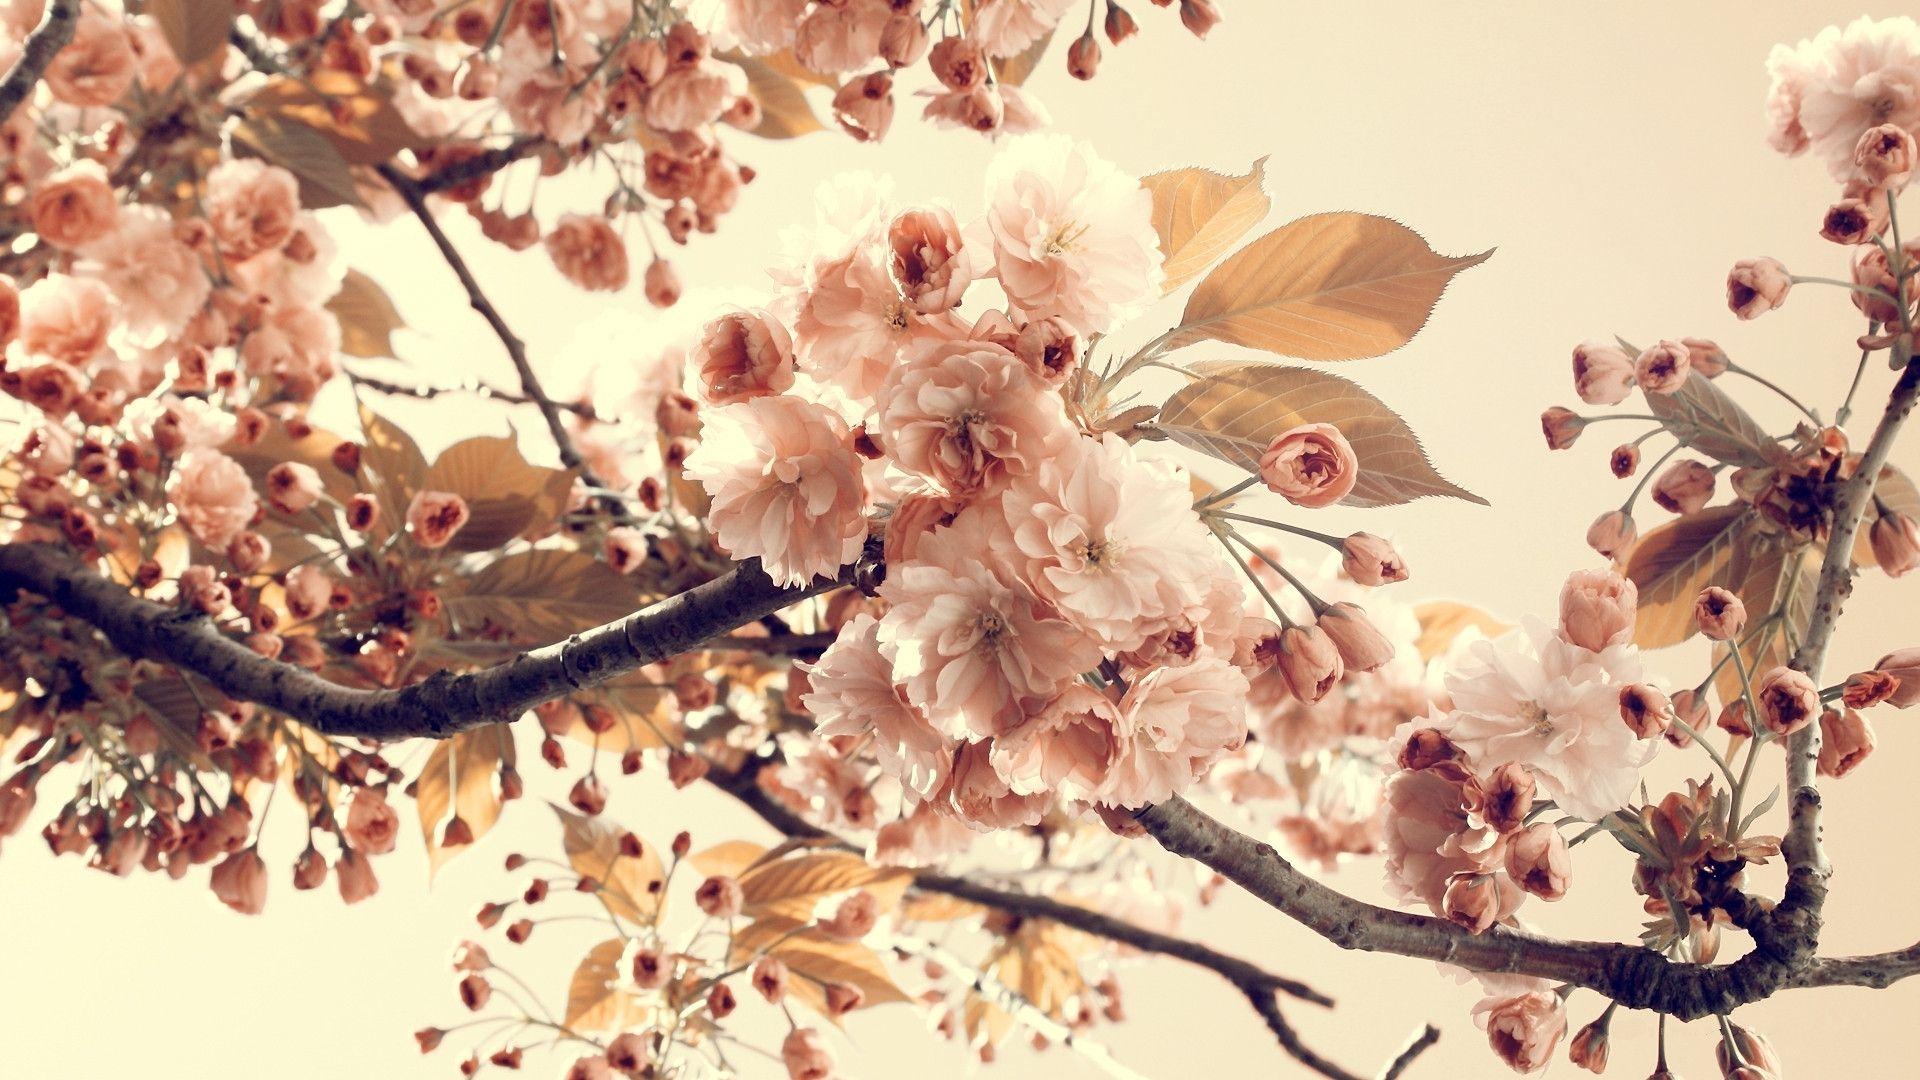 نگاره ای دیدنی از شکوفه های درخت سیب در تناژ رنگی نود